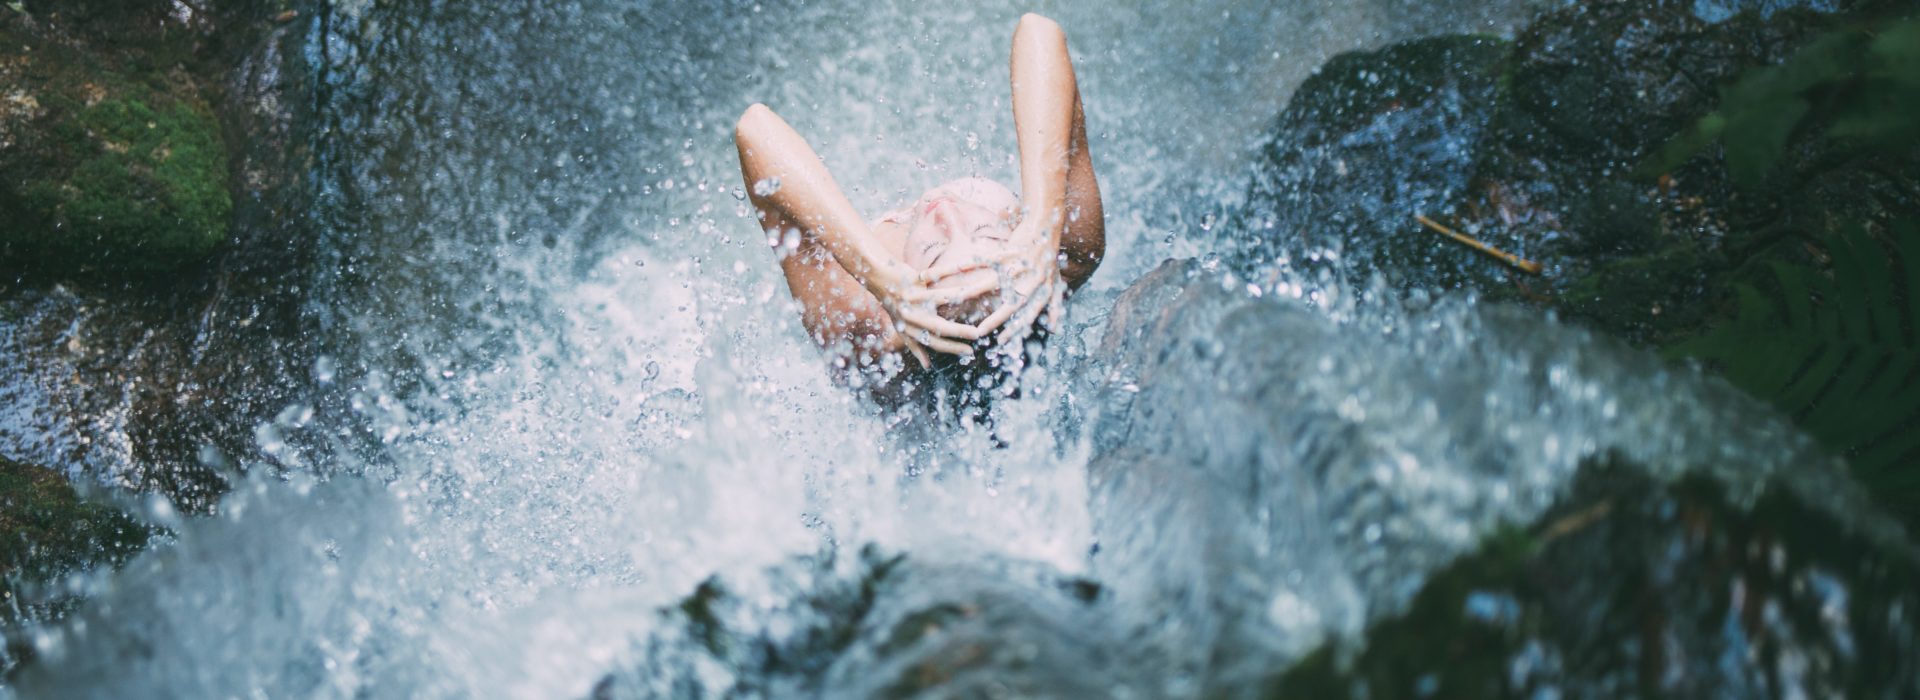 Фото девушки с мокрой писькой у водопада